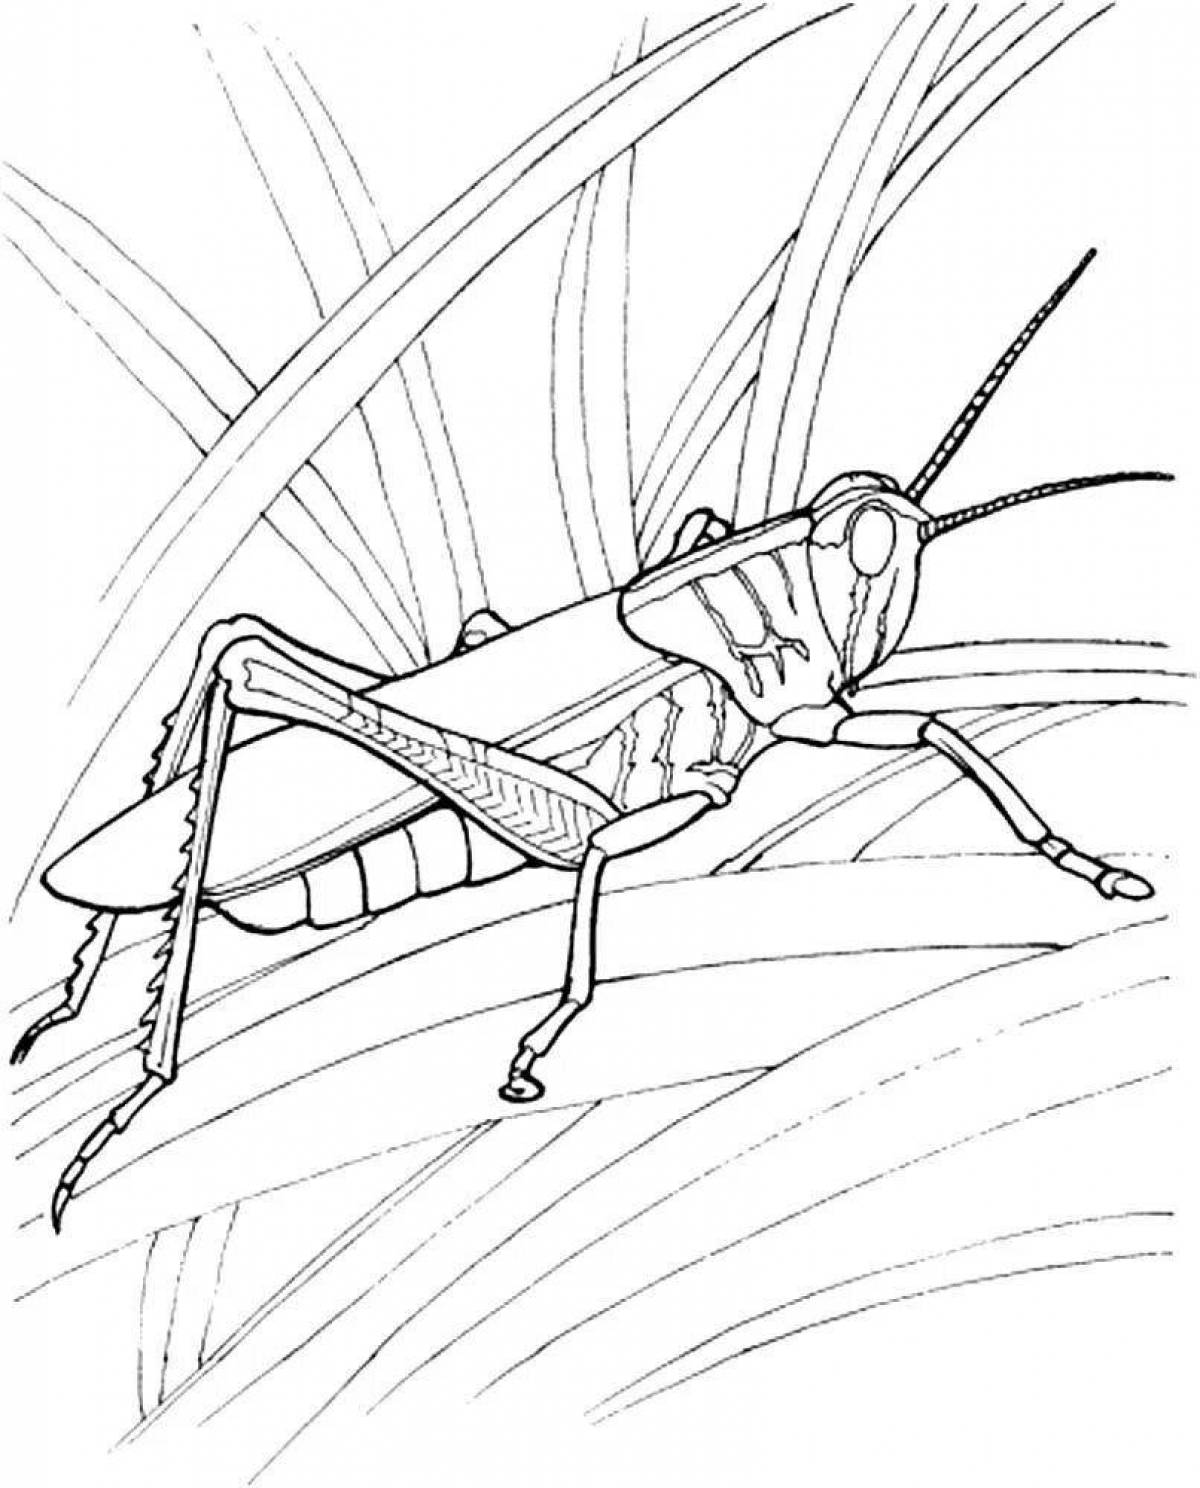 Live locust coloring book